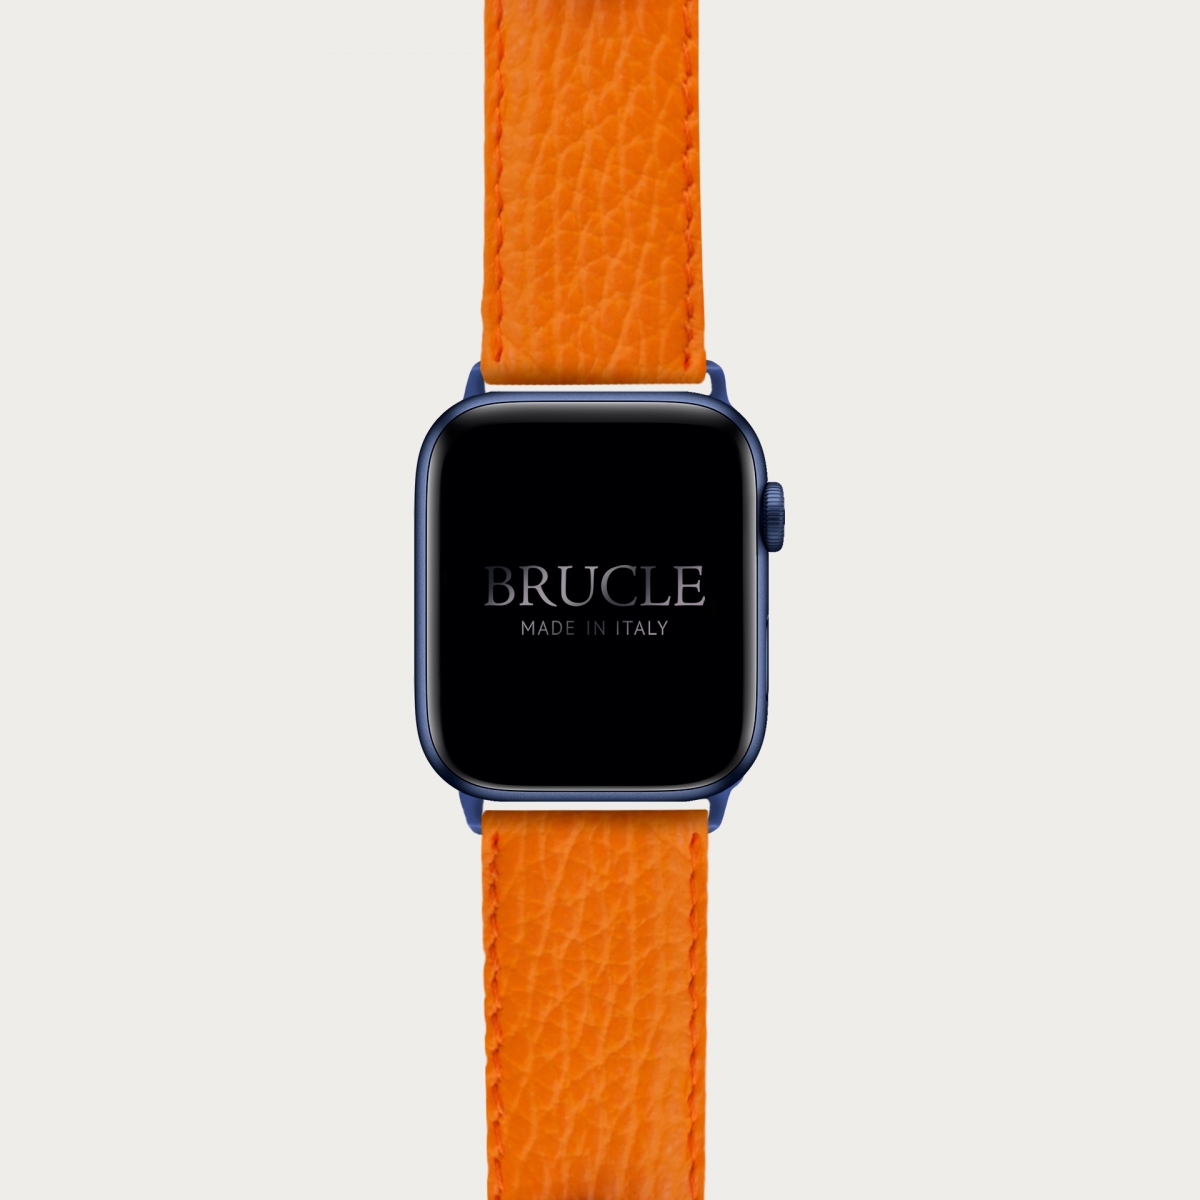 Armband kompatibel mit Apple Watch / Samsung Smartwatch, Orange, leder mit Saffiano-print